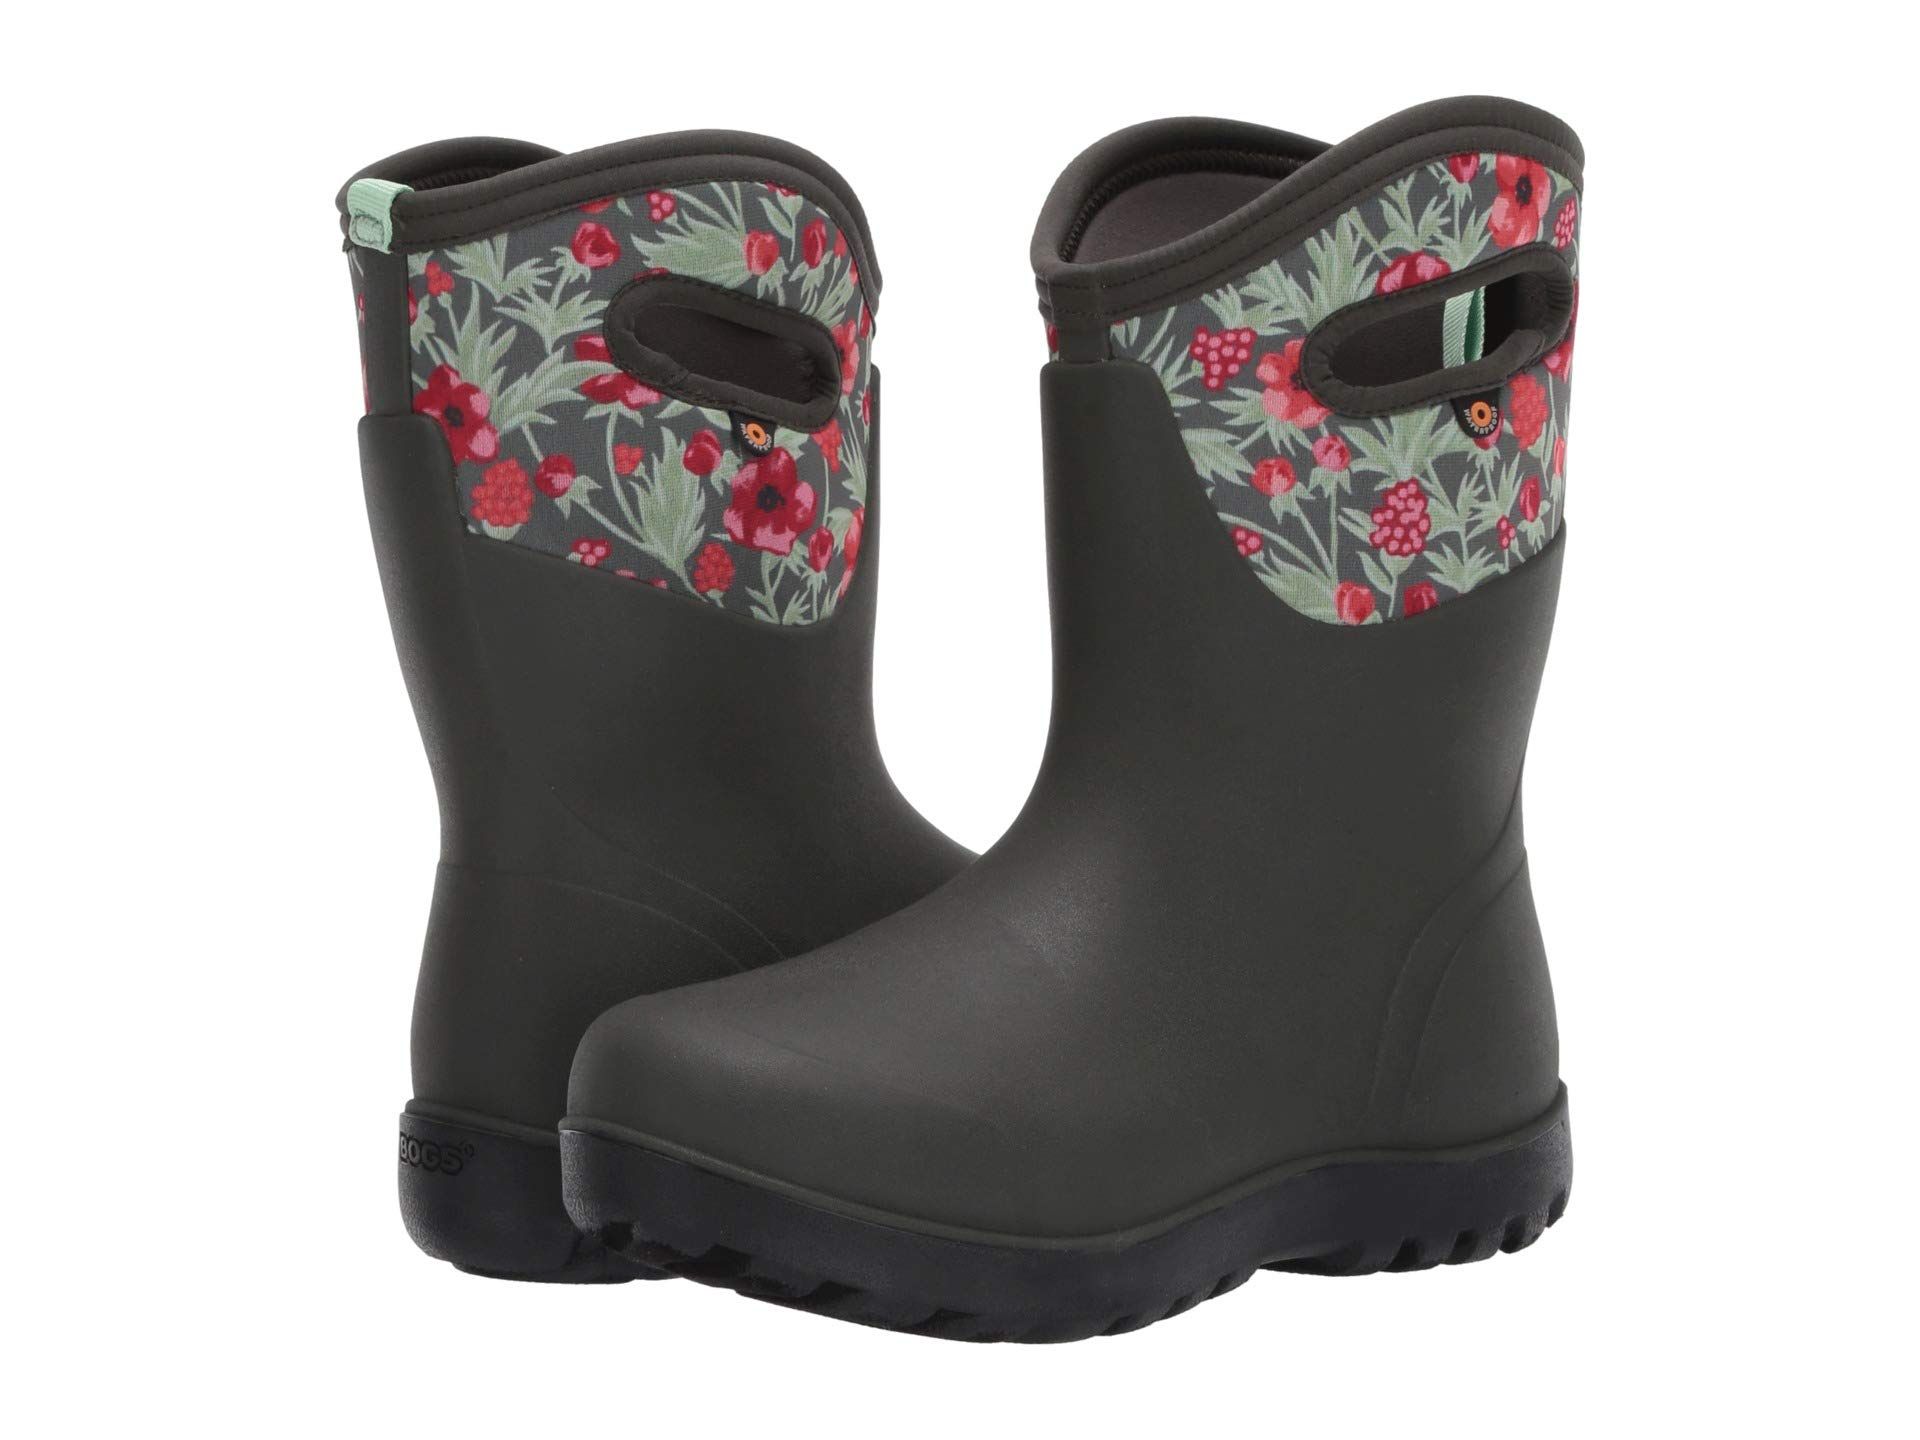 Buy > garden boots for women > in stock